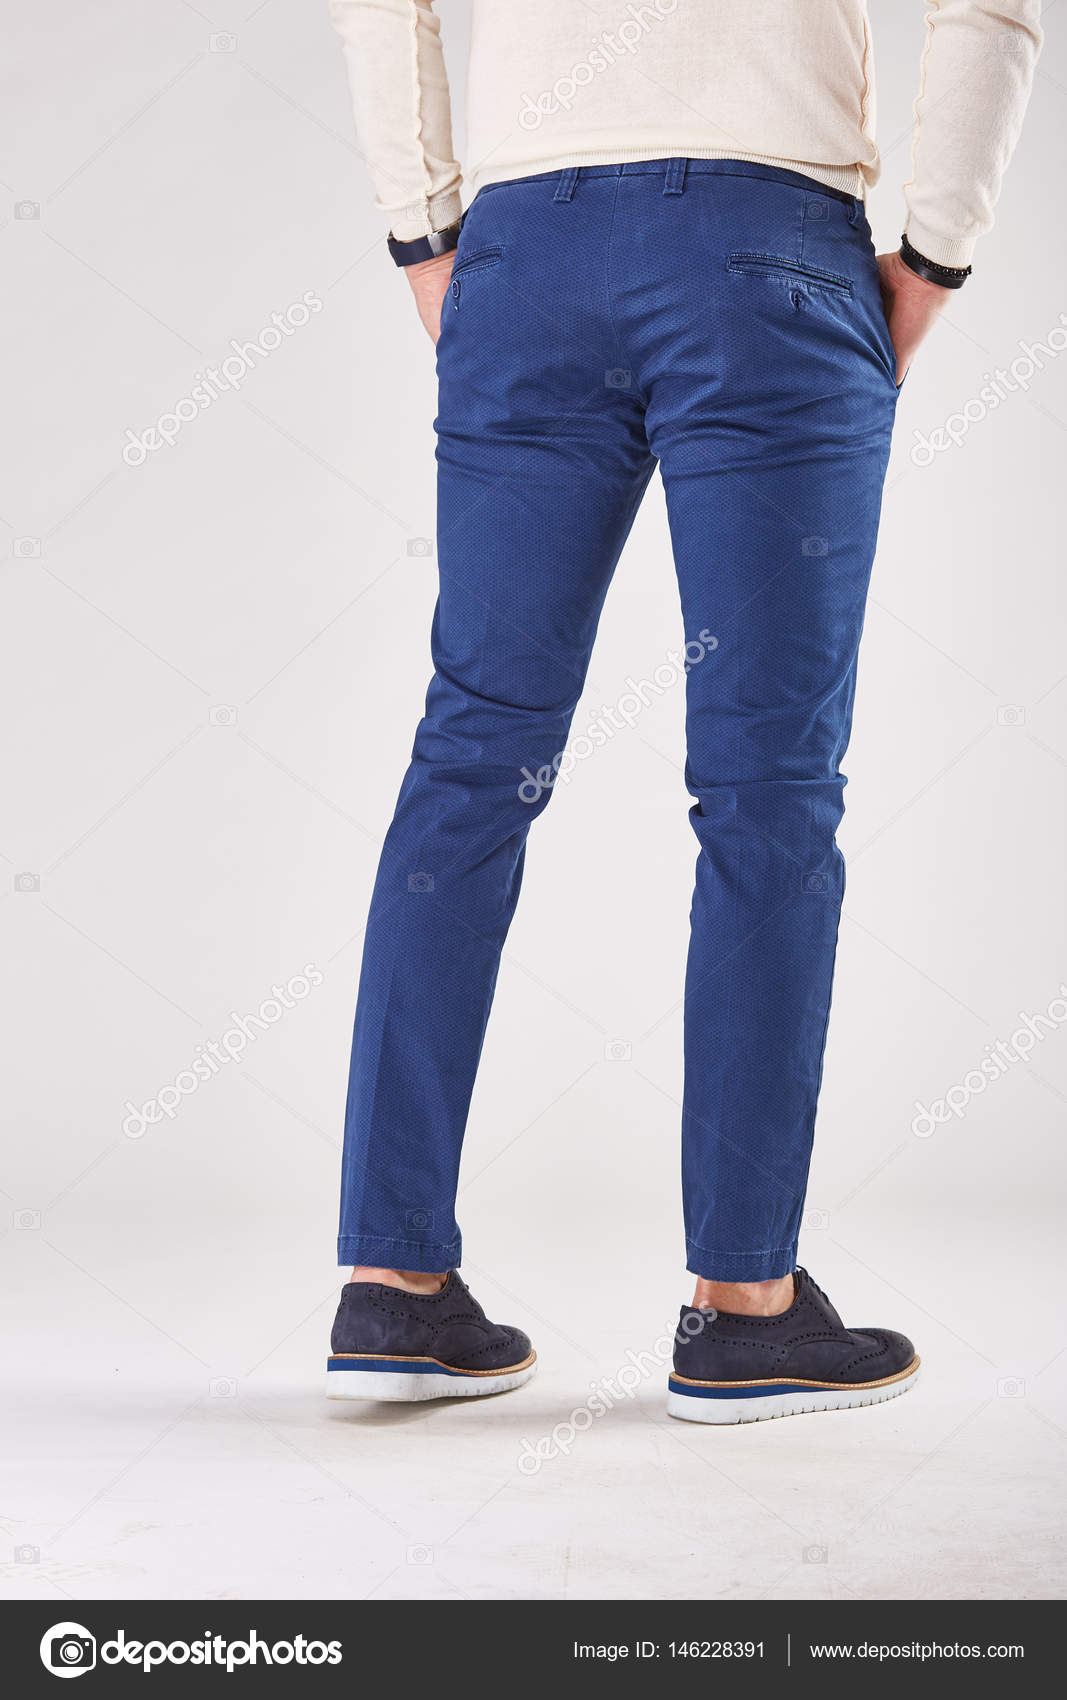 black shoes blue pants